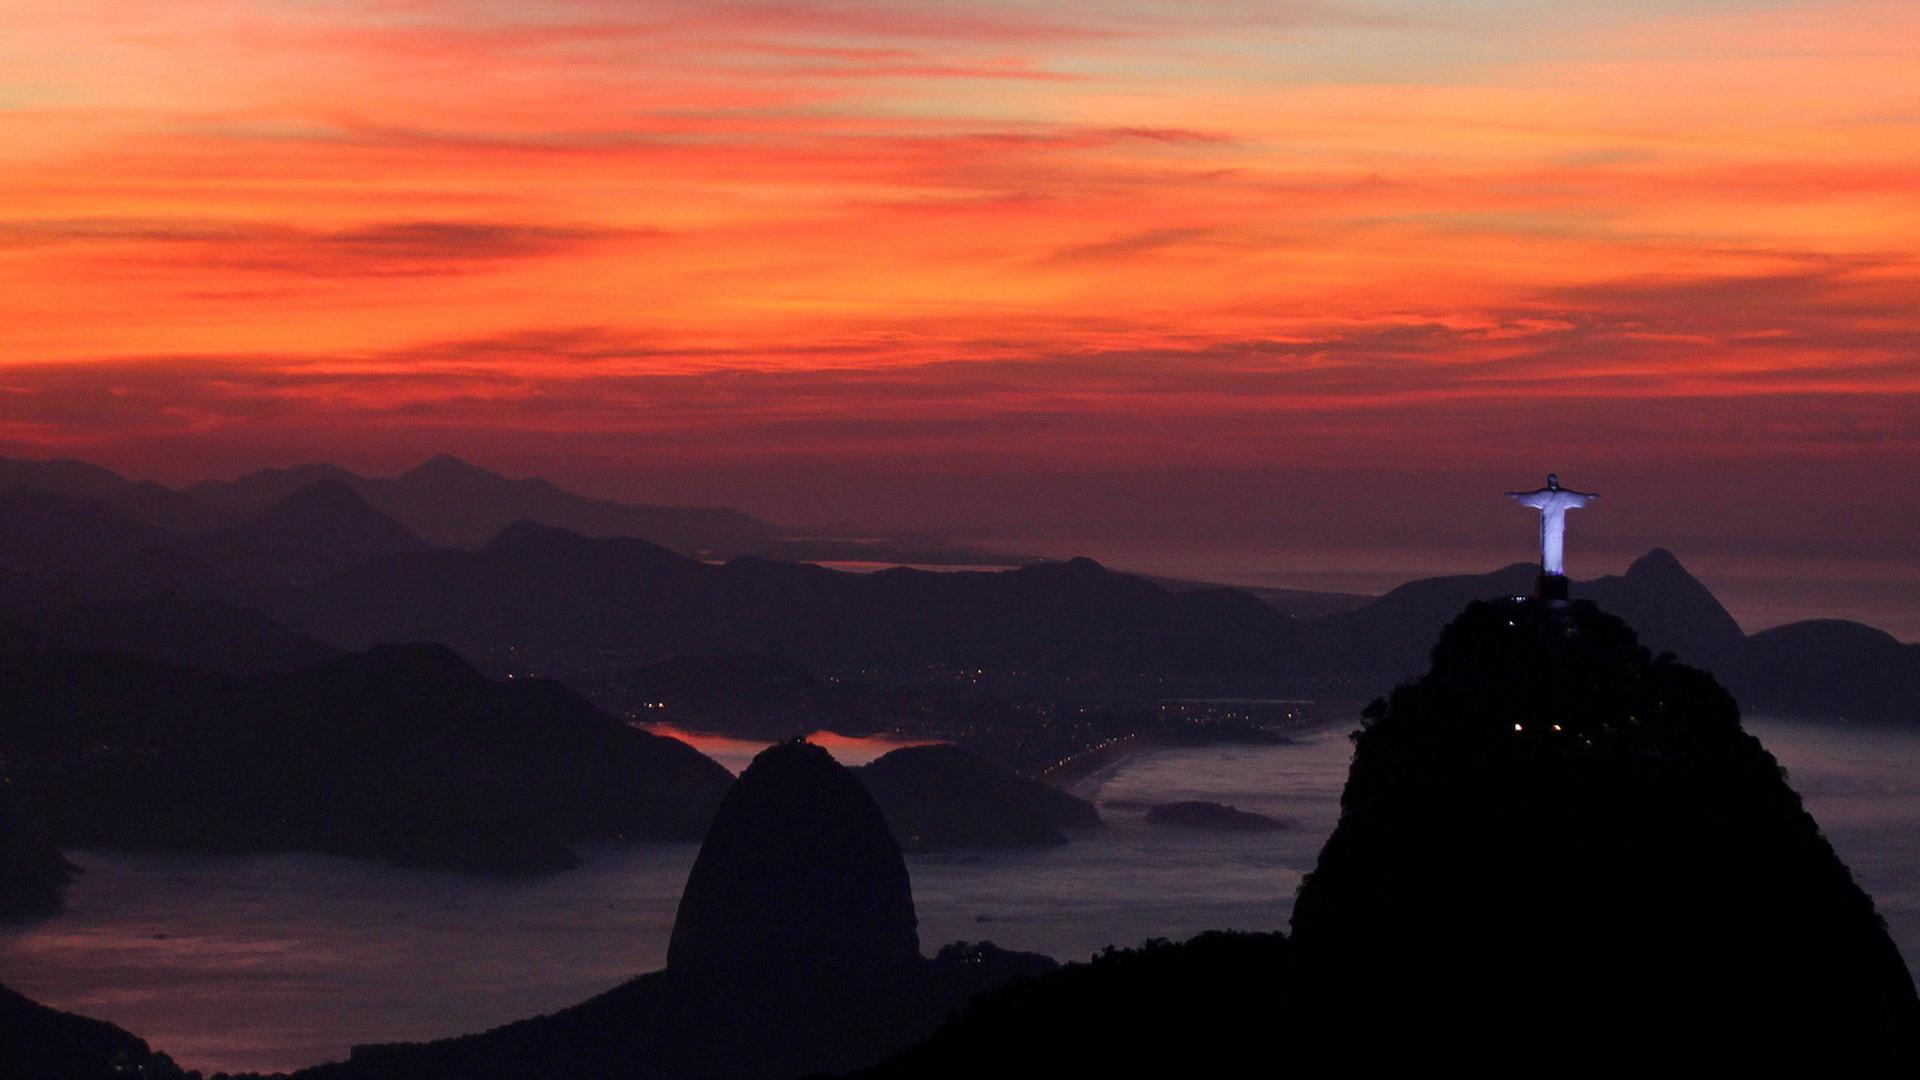 Die berühmte Christusstatue in der Bucht von von Rio de Janeiro erscheint in der Abenddämmerung vor einem rot leuchtenden Himmel.